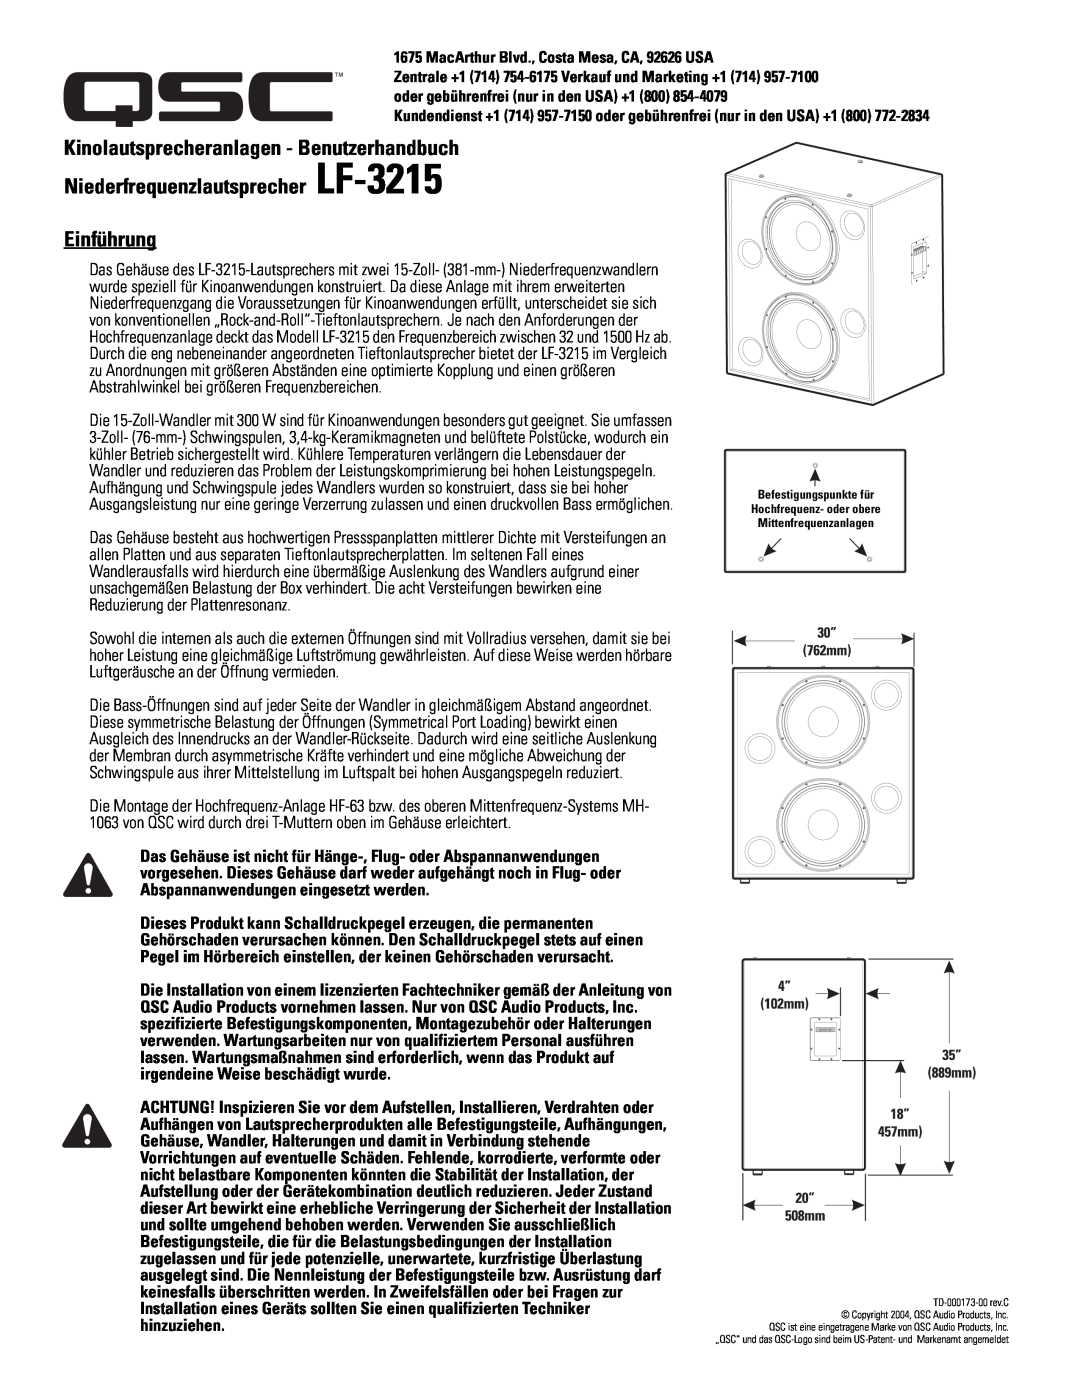 QSC Audio SC-322 specifications Niederfrequenzlautsprecher LF-3215 Einführung, Kinolautsprecheranlagen - Benutzerhandbuch 